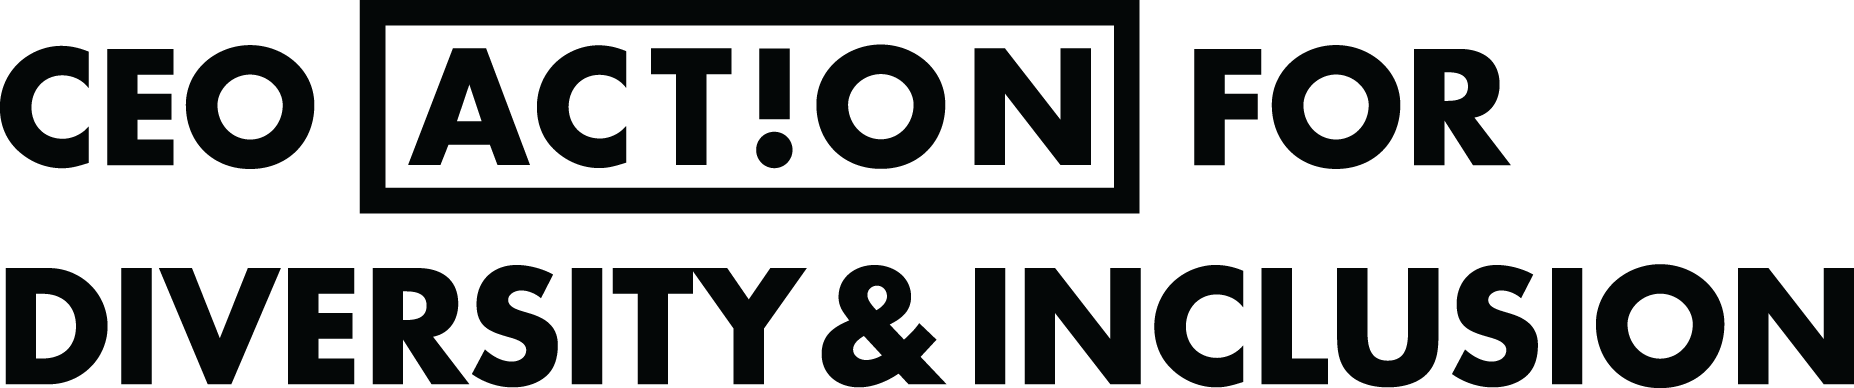 CEO action logo